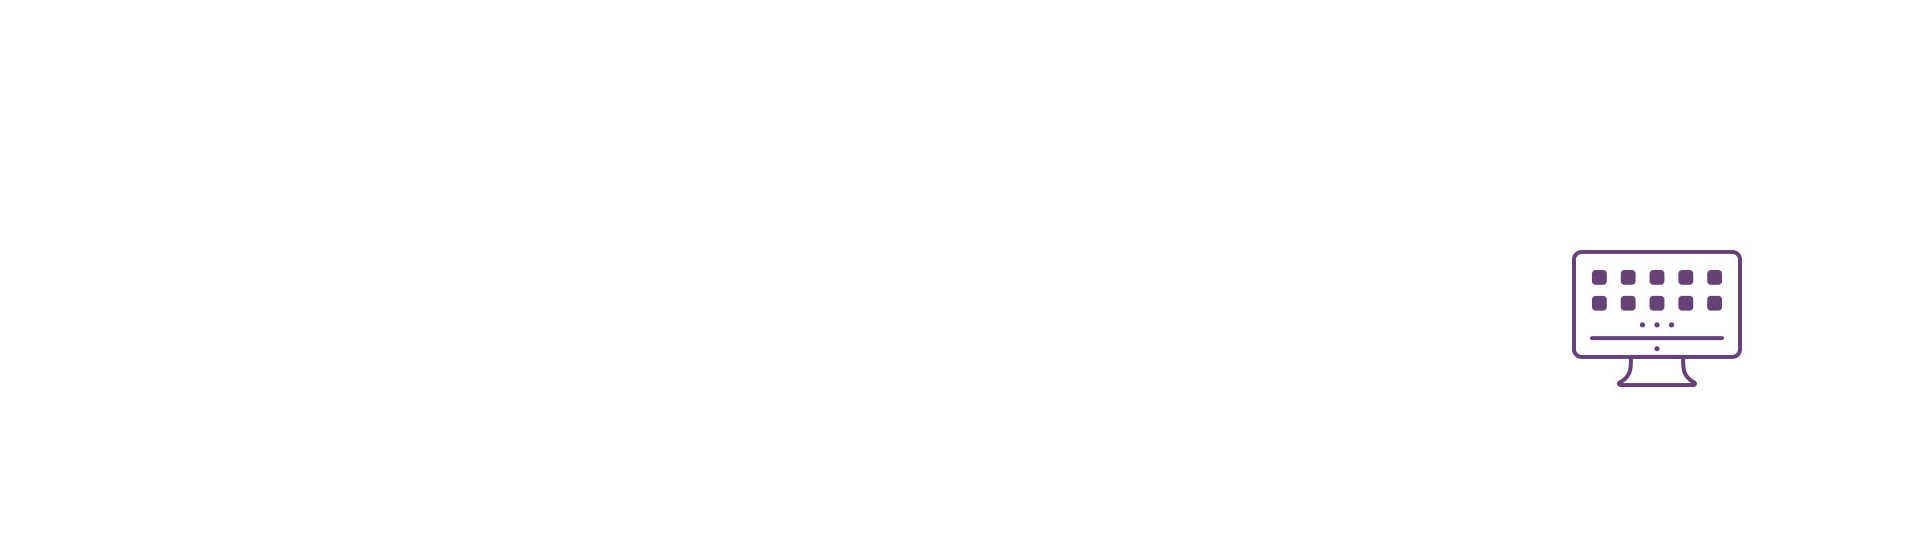 scheduler-explainer